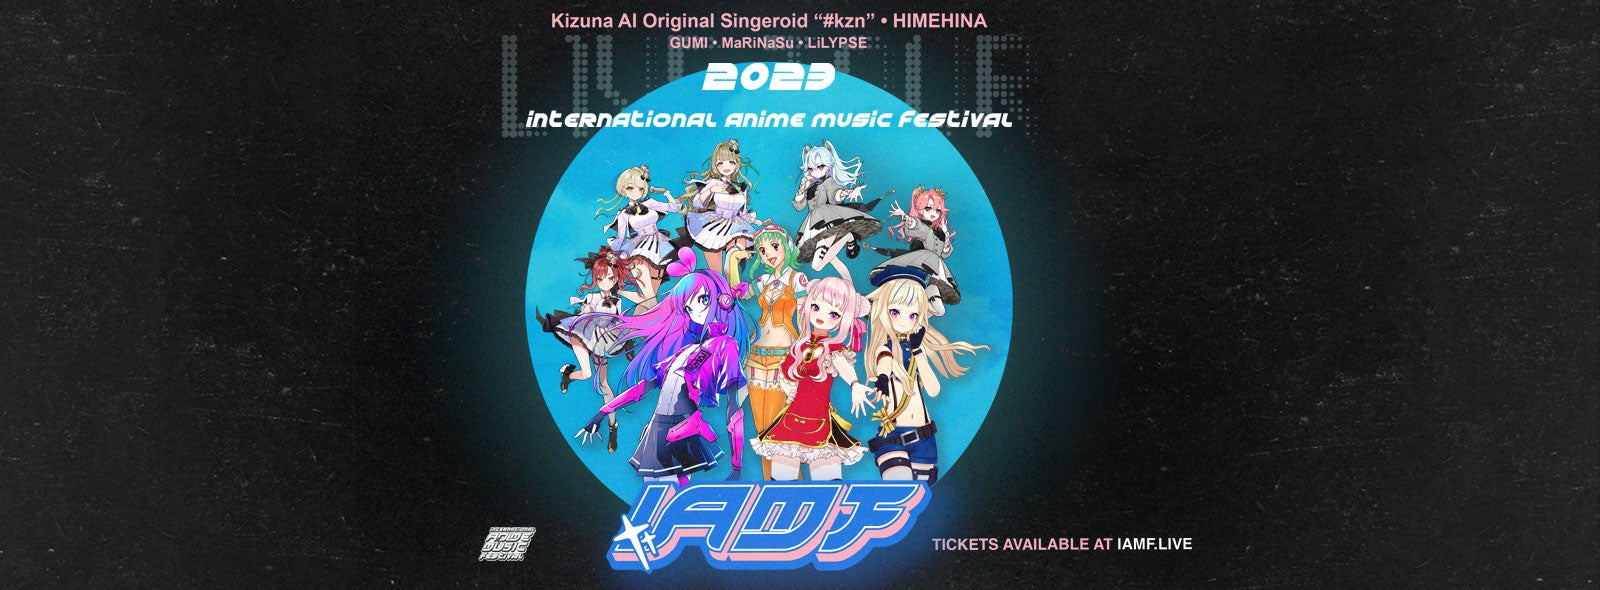 International Anime Music Festival